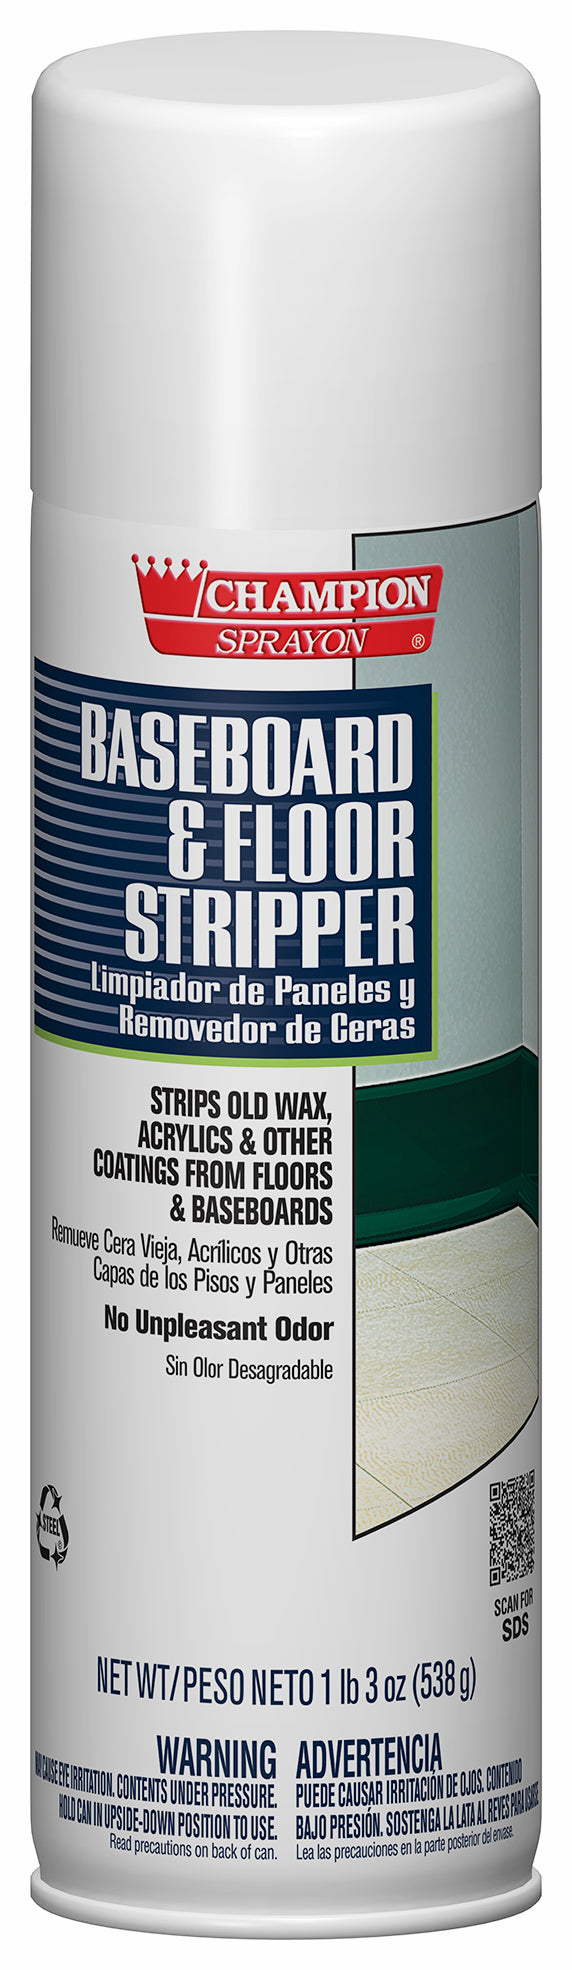 Chase Baseboard & Floor Stripper, 19 oz. Aerosol - 12/CS (438-5156)